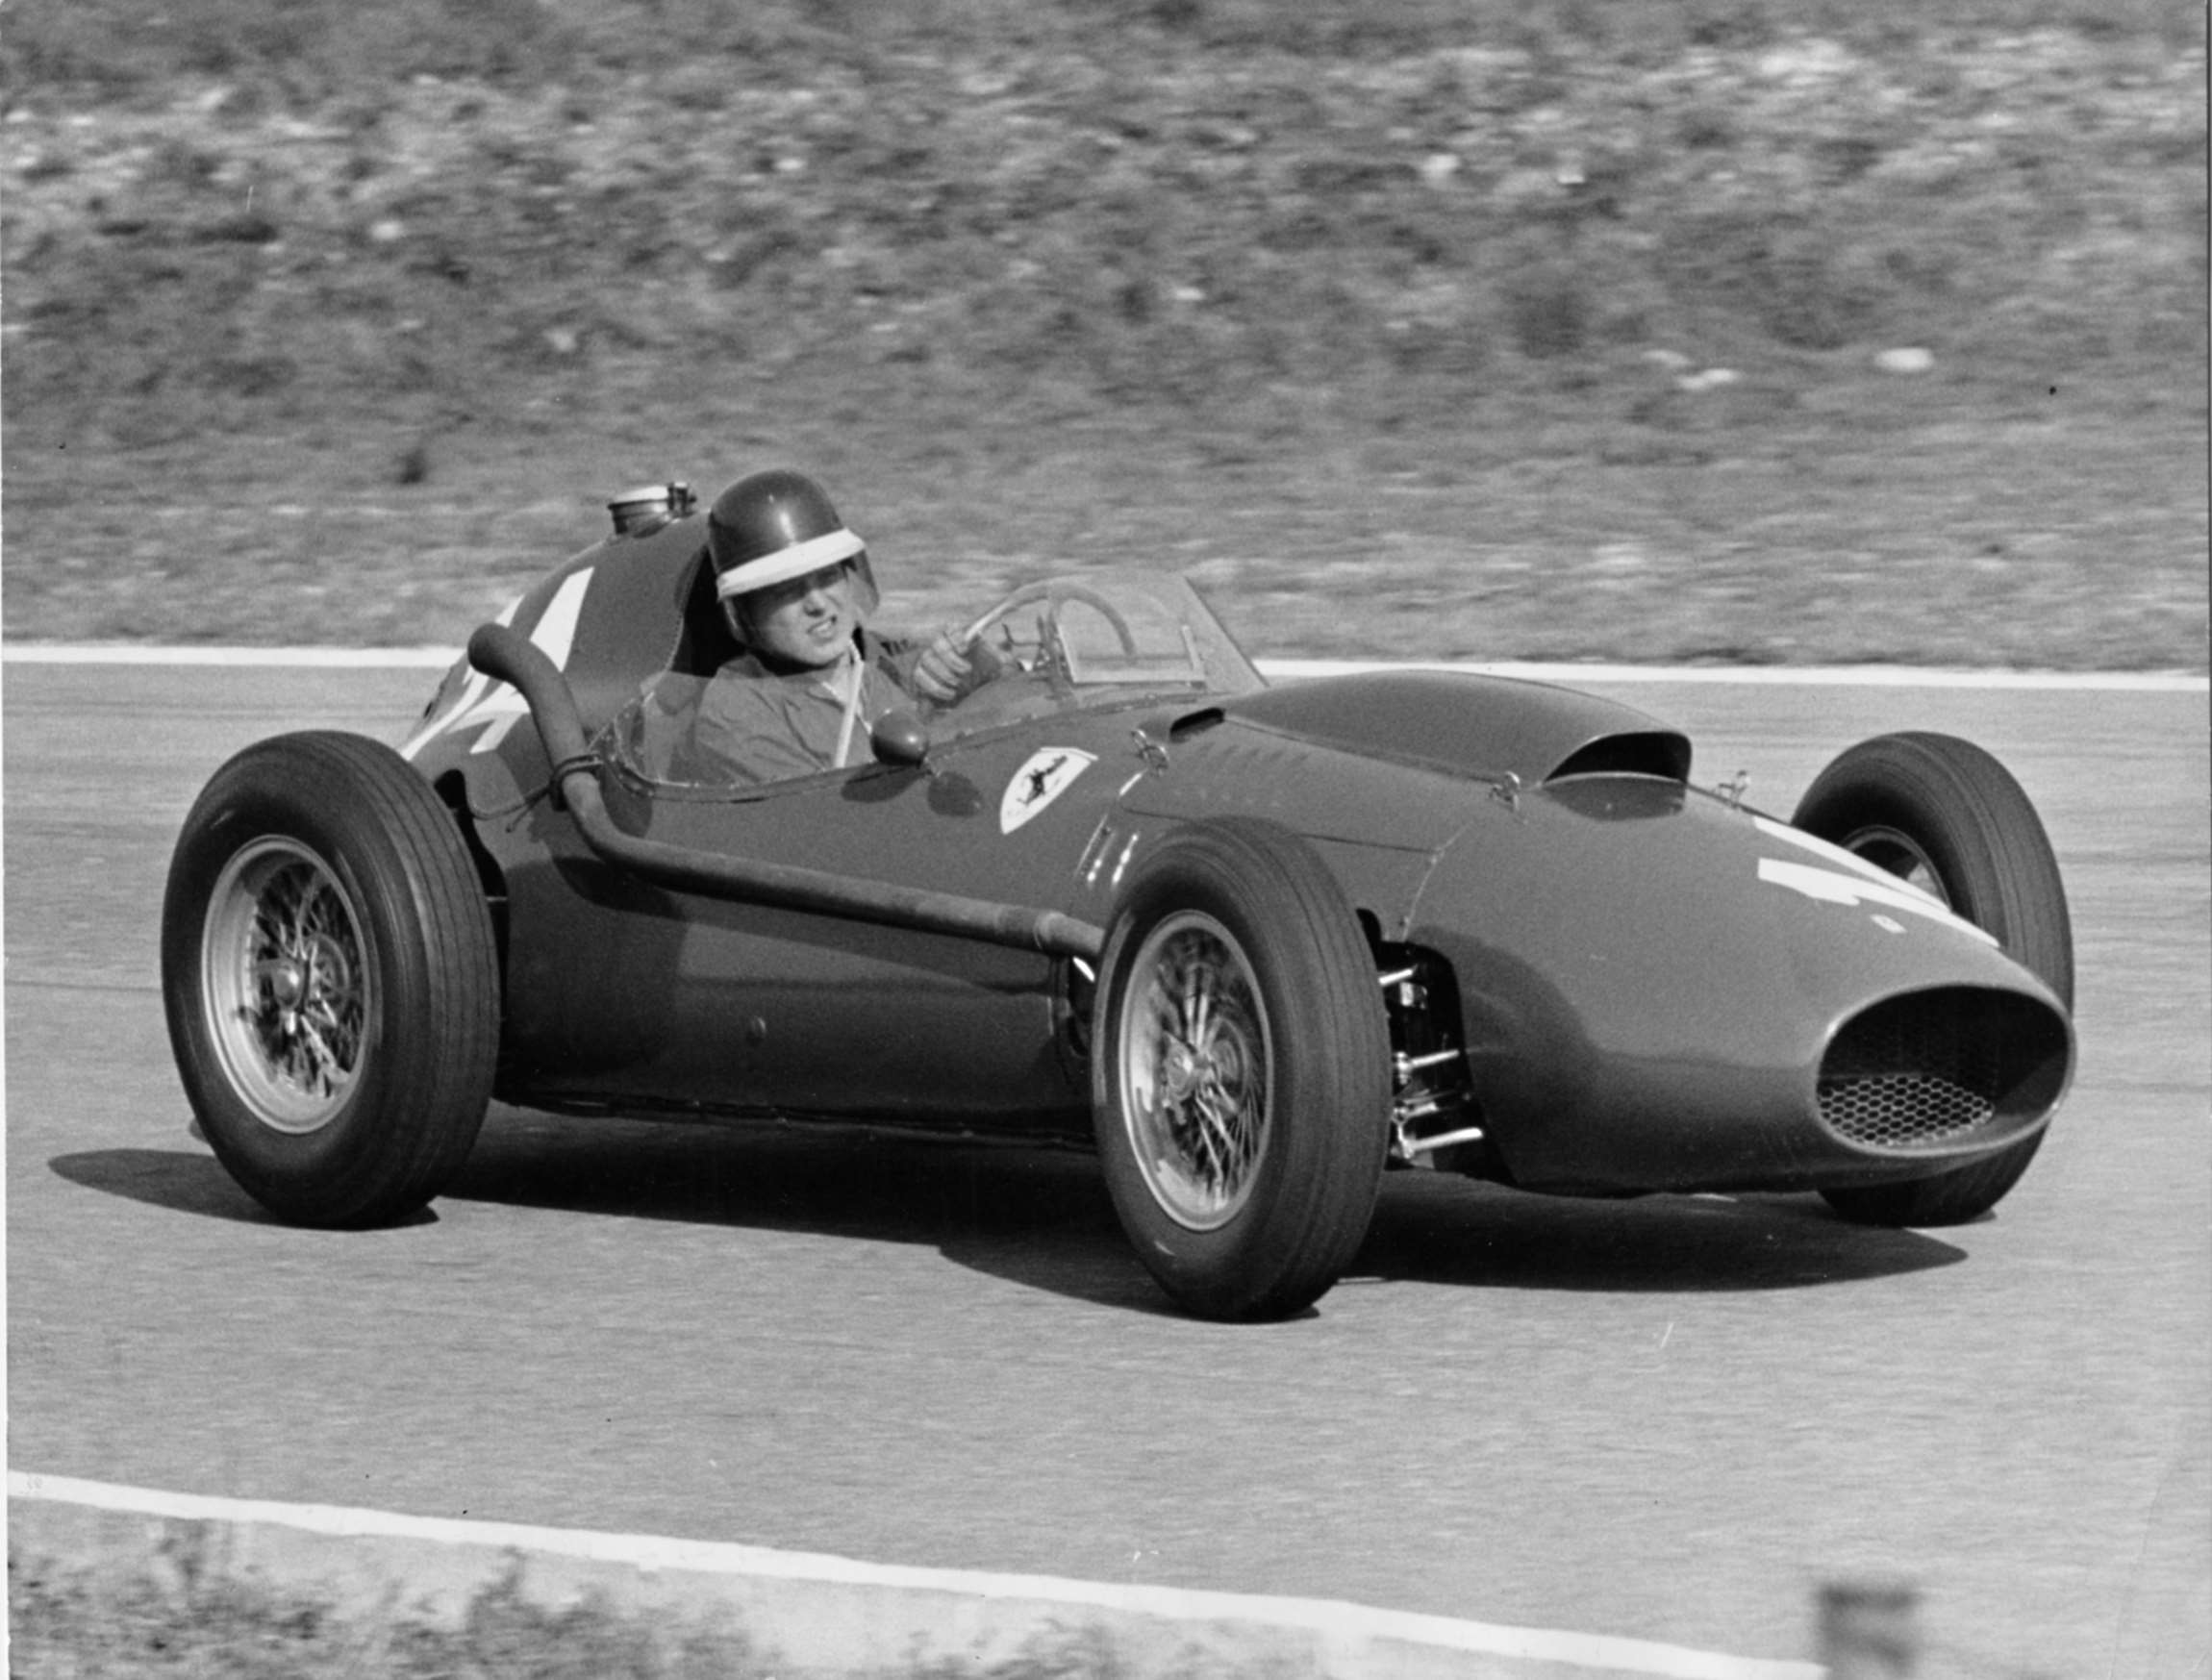 Ferrari Dino 246 1958 - Hawthorn, Italian GP, Monza